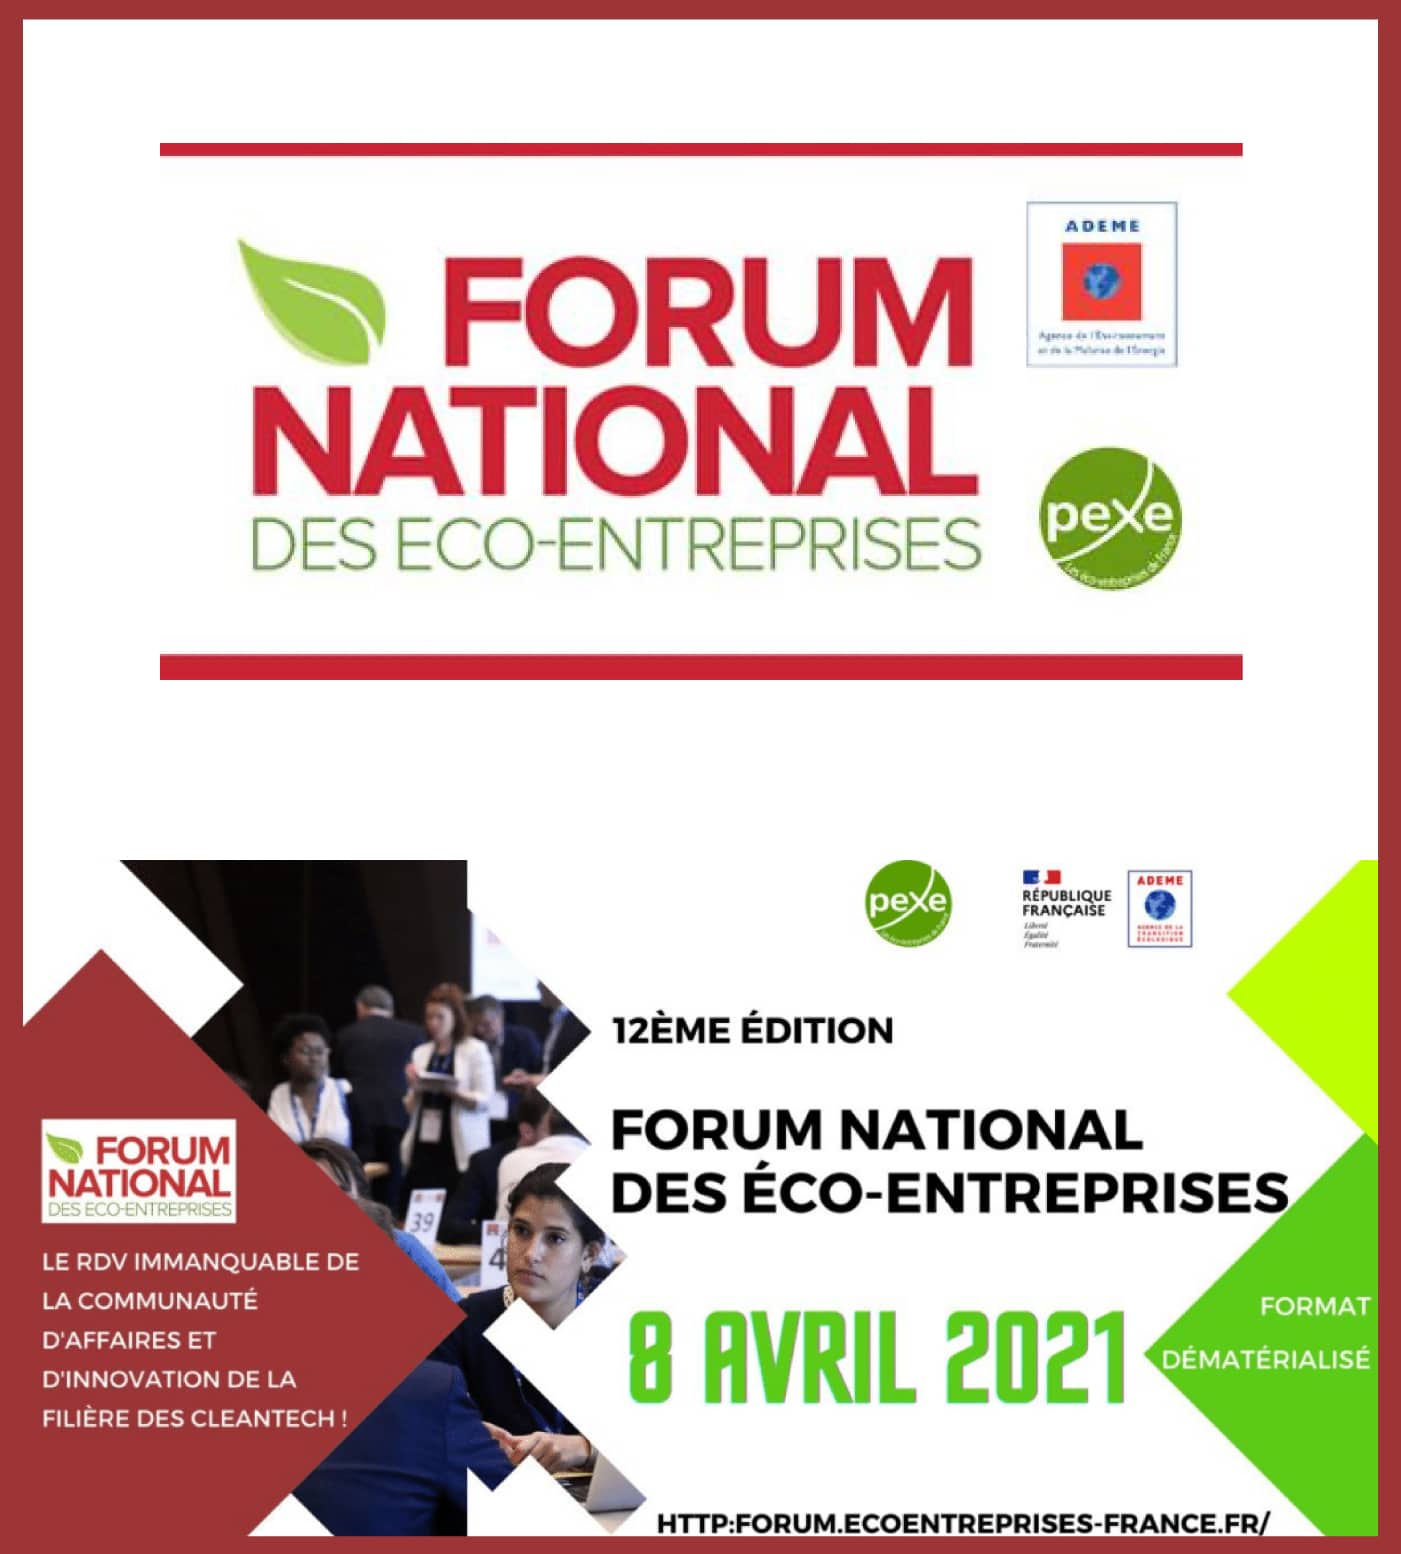 Forum National des Eco-entreprises